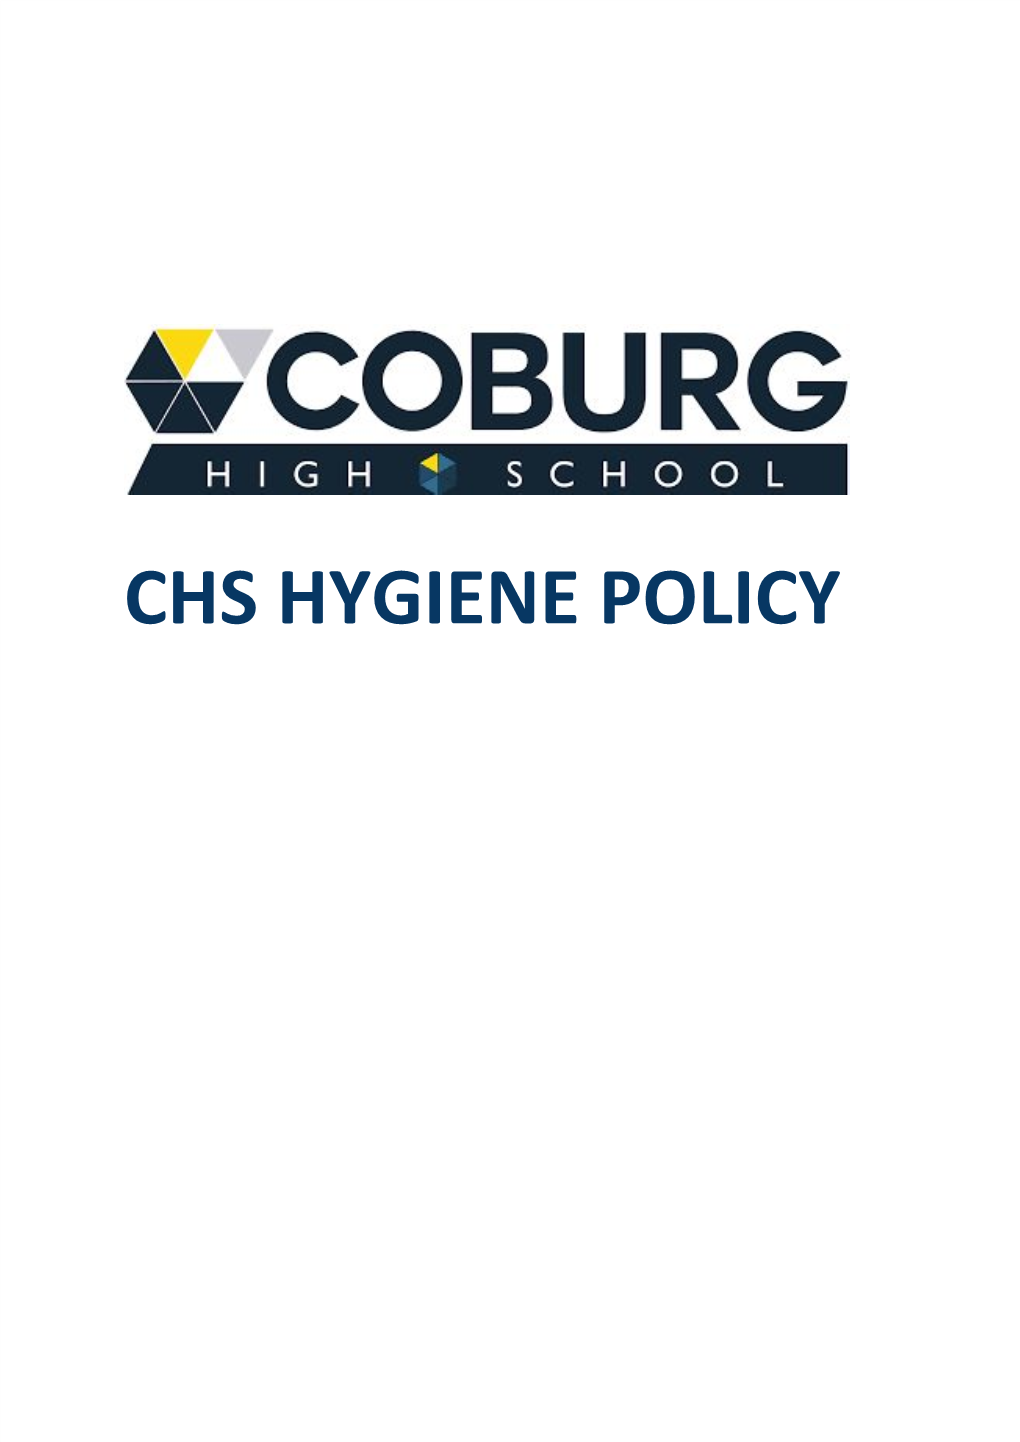 Chs Hygiene Policy